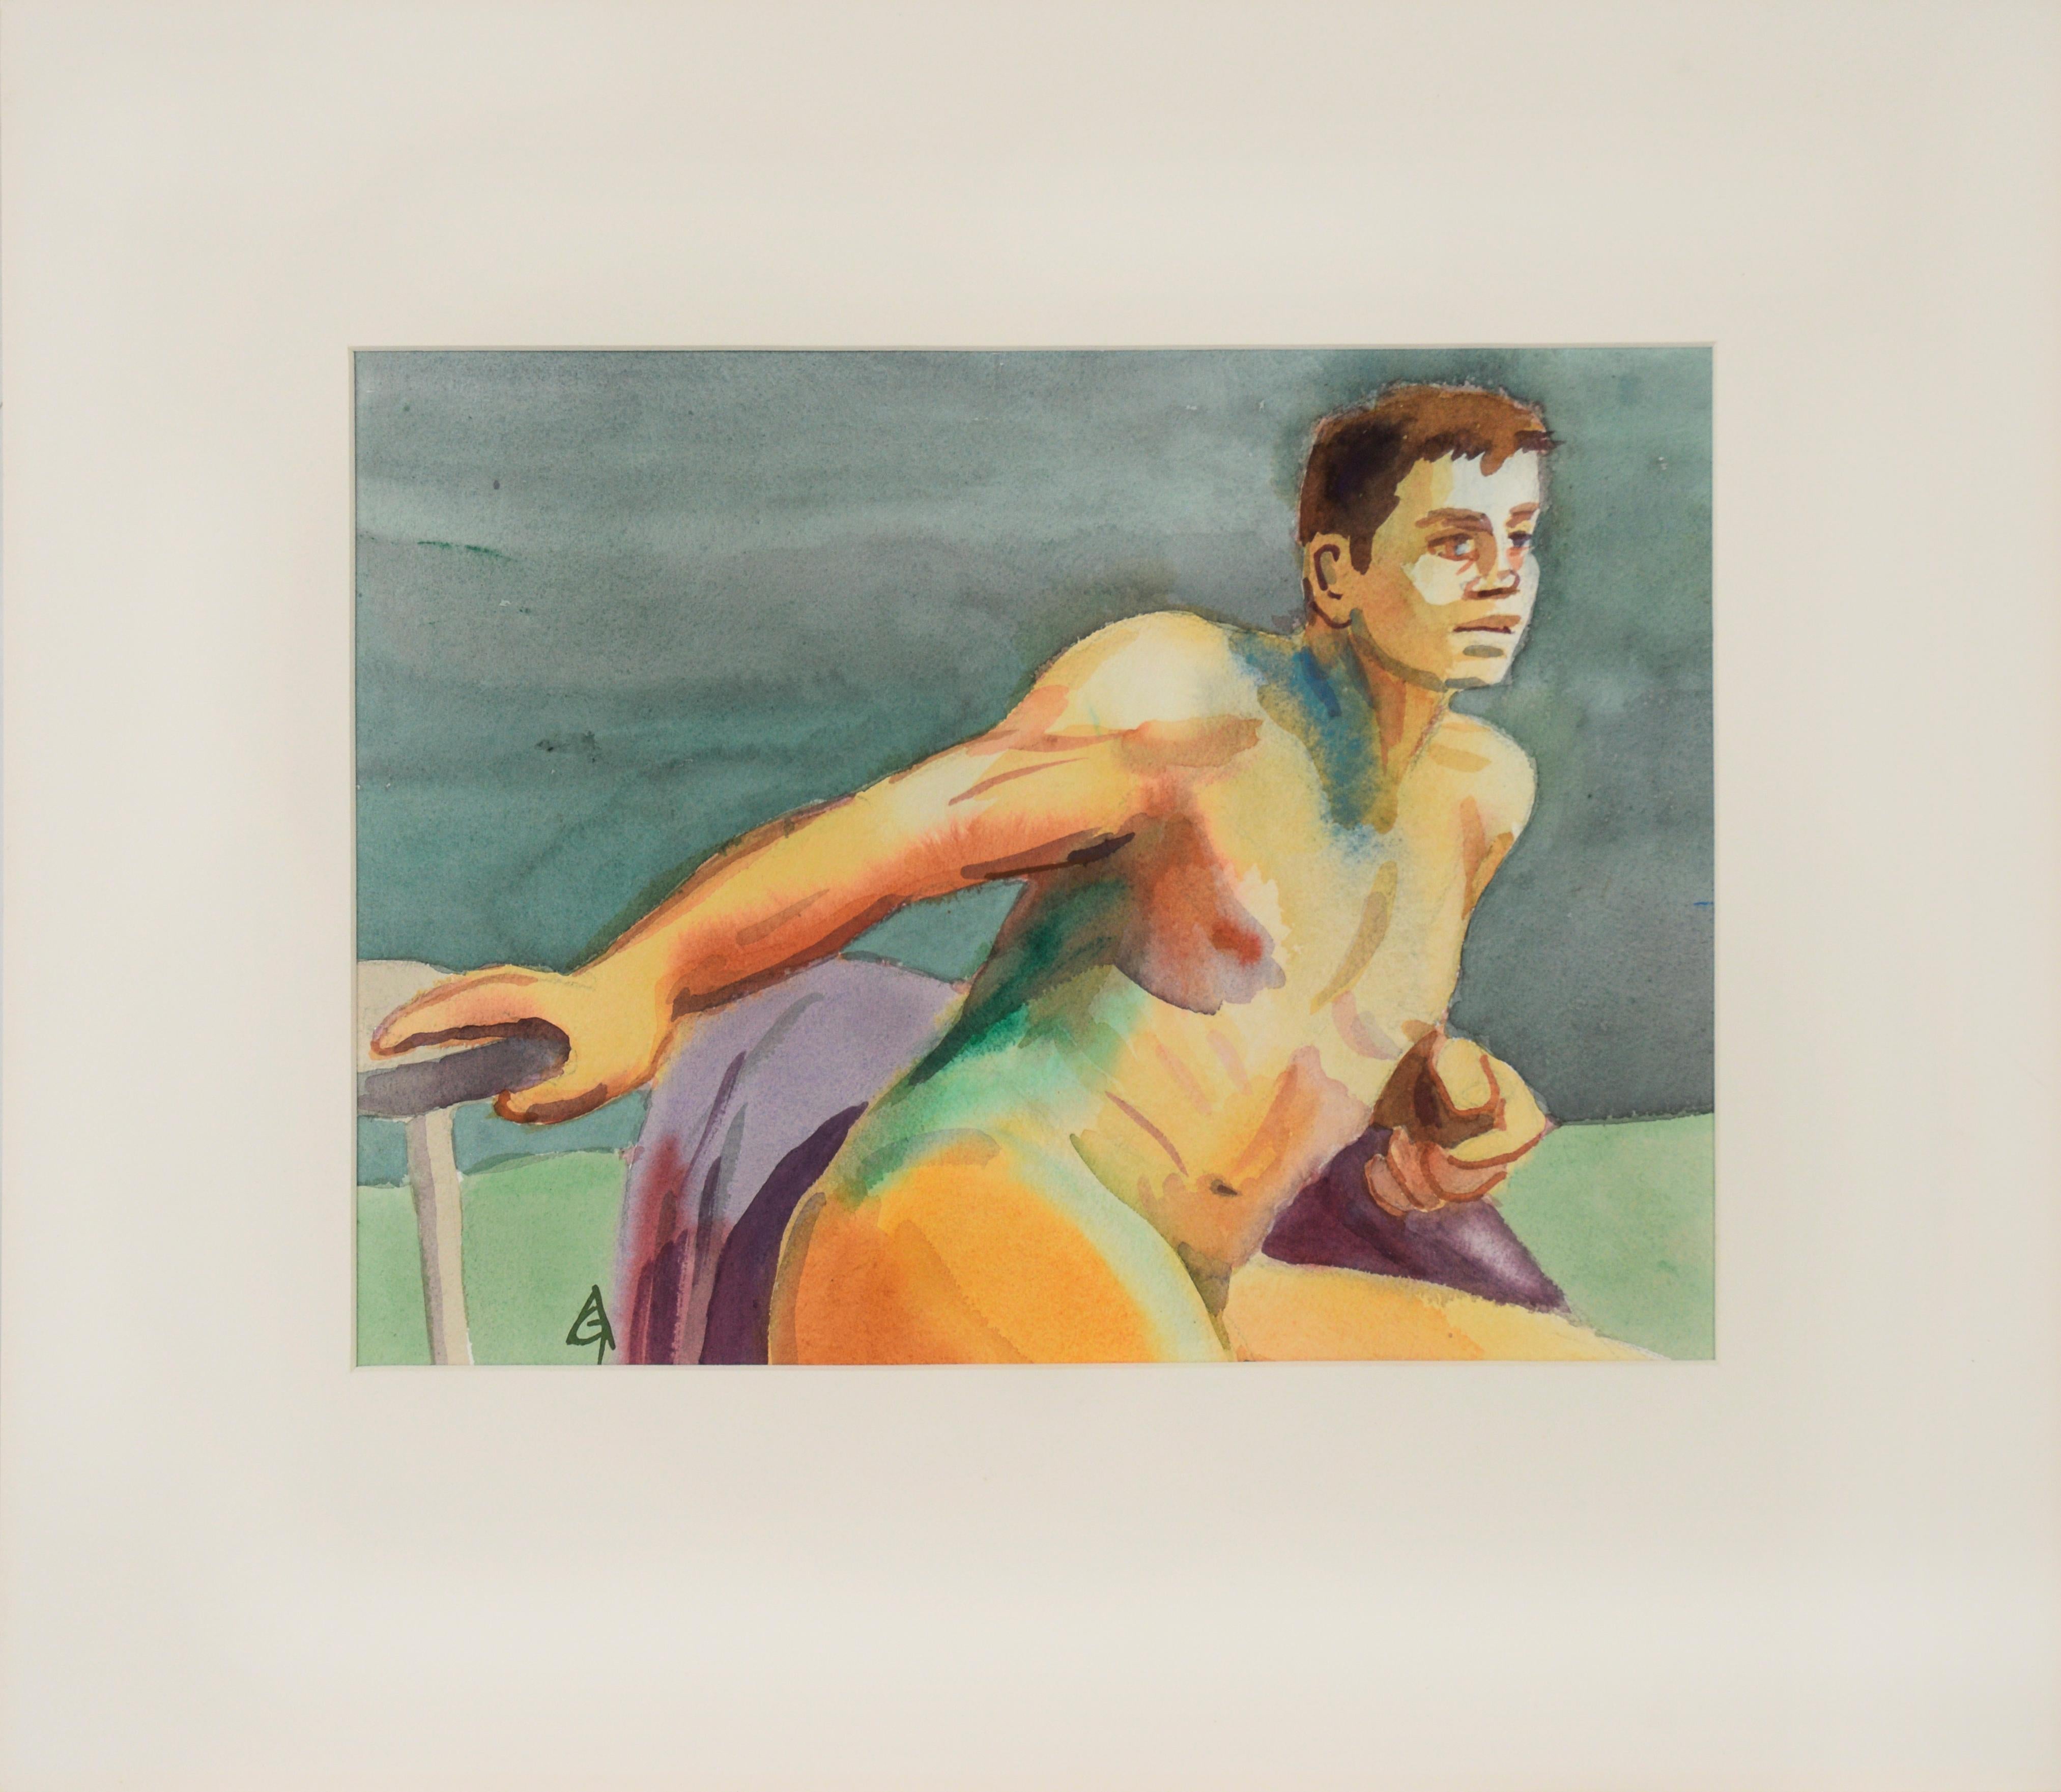 Arnold A. Grossman Figurative Art - "Zoltan" - 1990 Male Nude Study